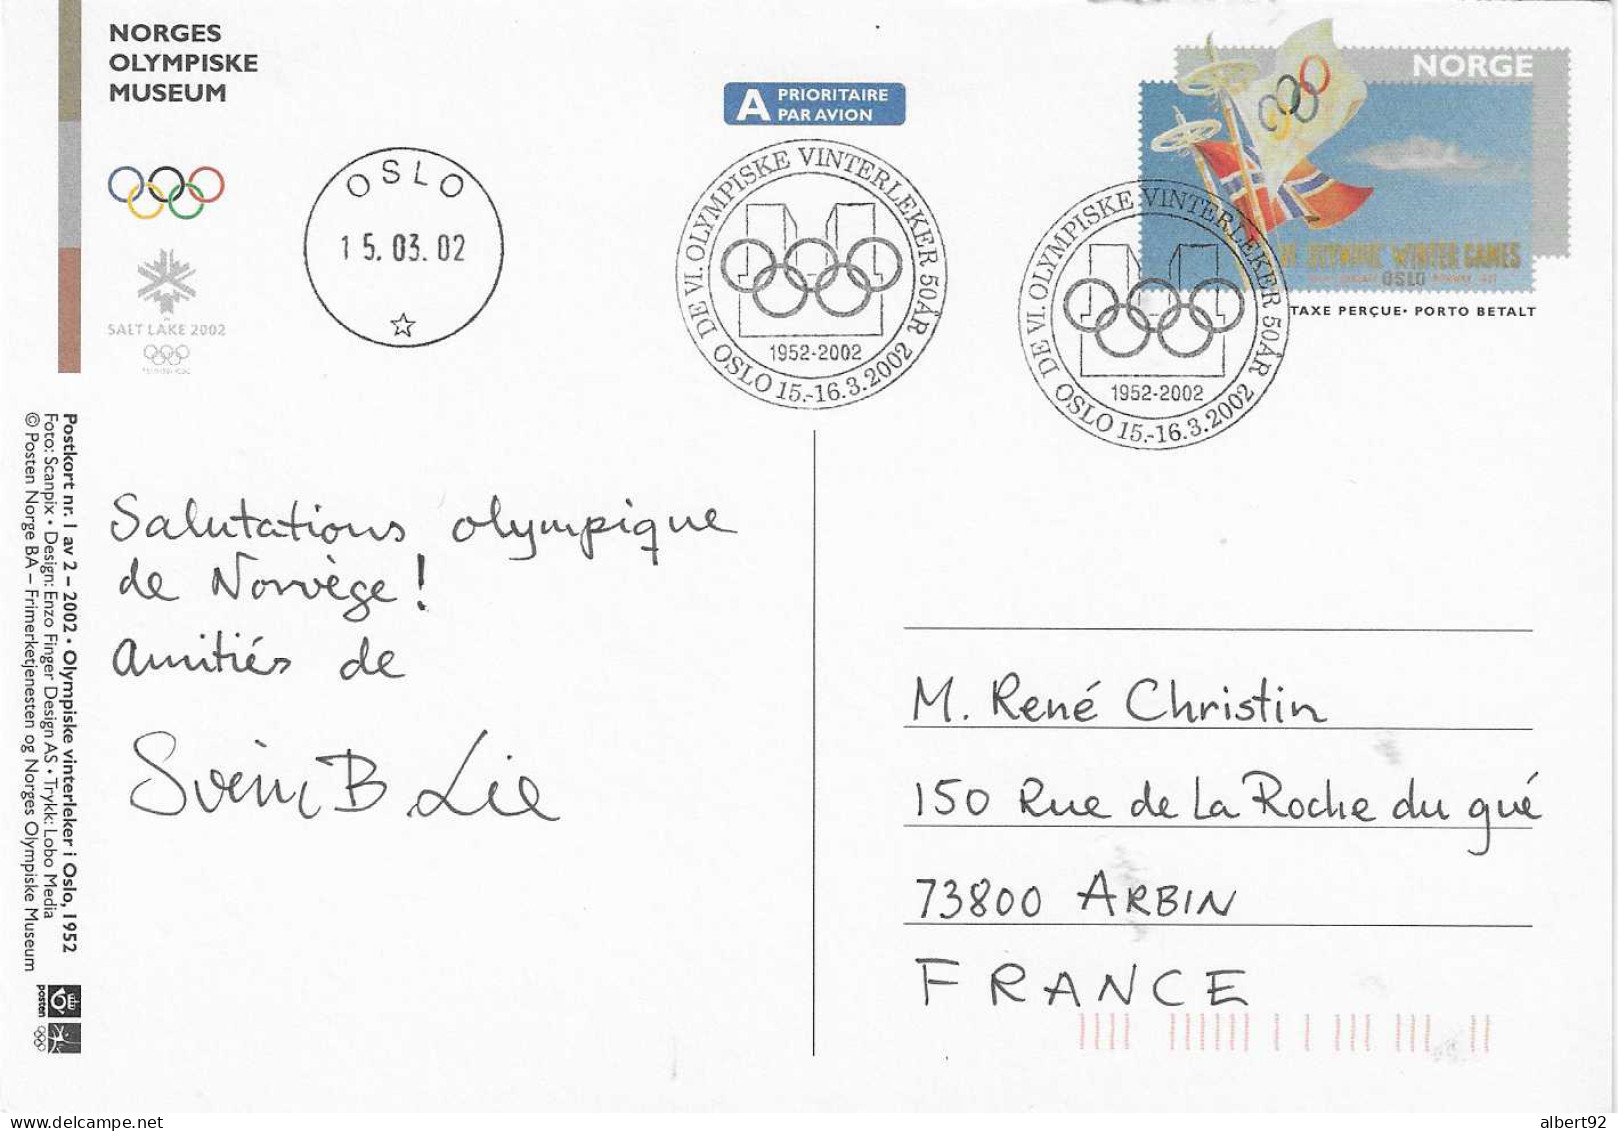 2002 50e Anniv. Des Jeux Olympiques D'Oslo 1952: Hommage Aux Médaillés Or: H.Andersen (patinage)et H.Brenden (ski Fond) - Hiver 1952: Oslo